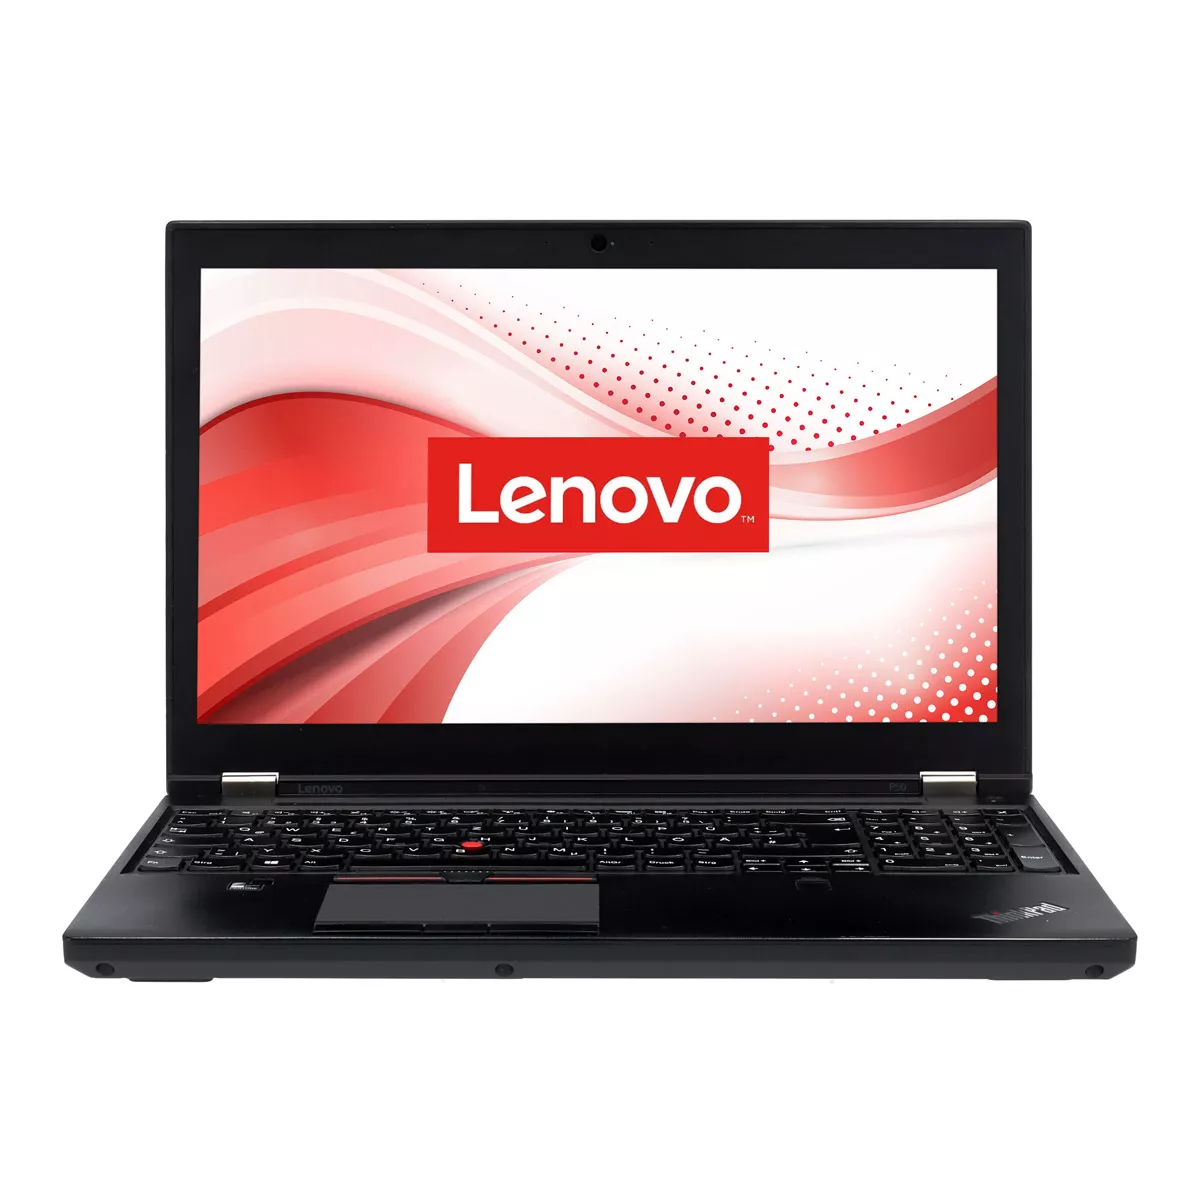 Lenovo ThinkPad P51 Core i7 7820HQ nVidia Quadro M2200M 4,0 GB 512 GB M.2 SSD Webcam A+